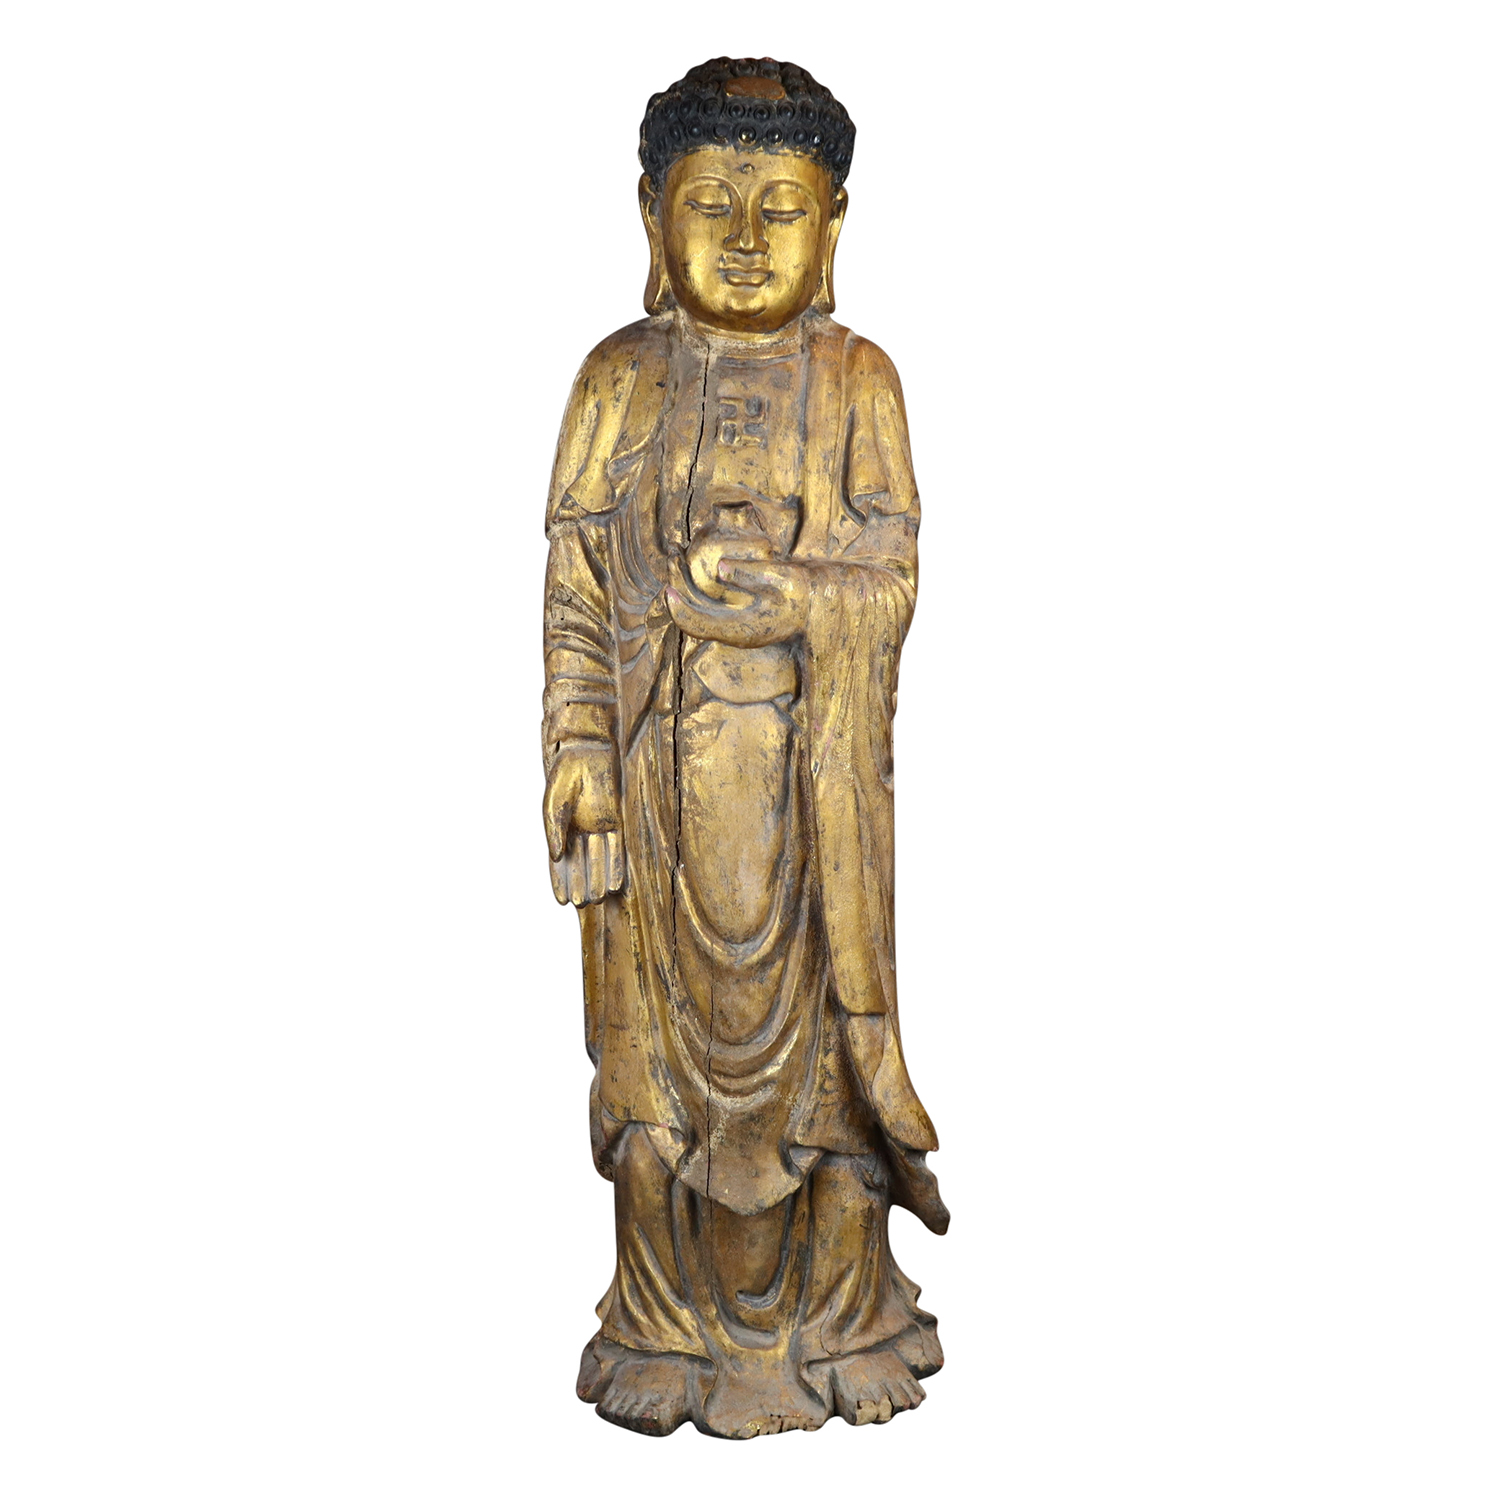 19th Century Chinese Antique Wooden Figure of the Medicine Buddha Bhaishajyaguru